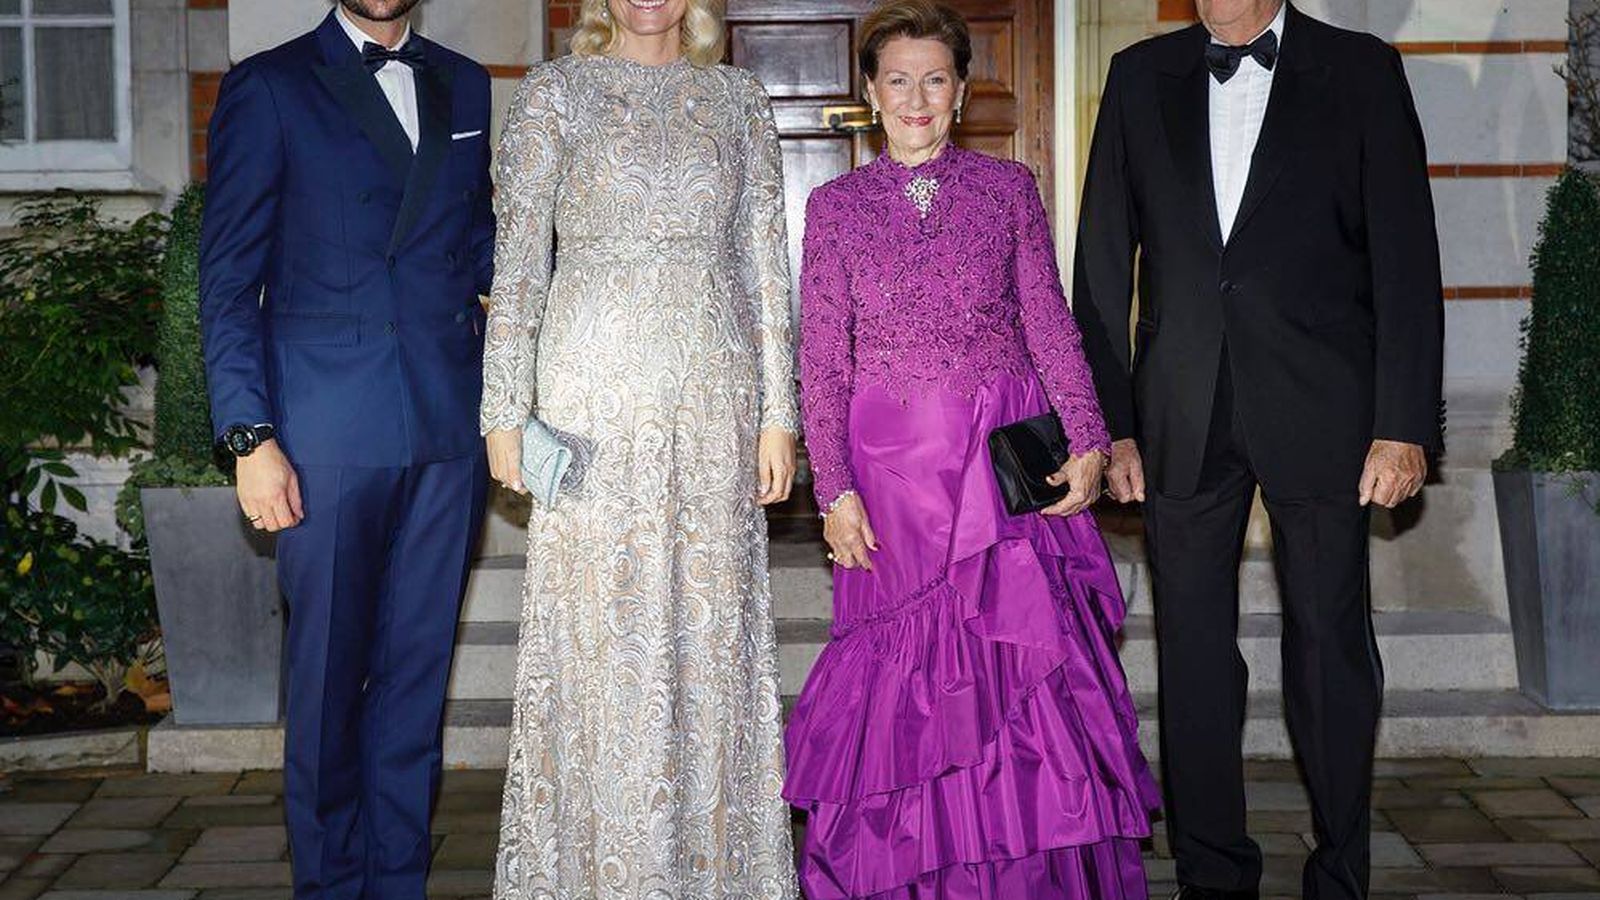 Foto: Los príncipes Haakon y Mette-Marit y los reyes Sonia y Harald de Noruega. (Instagram Casa Real Noruega)